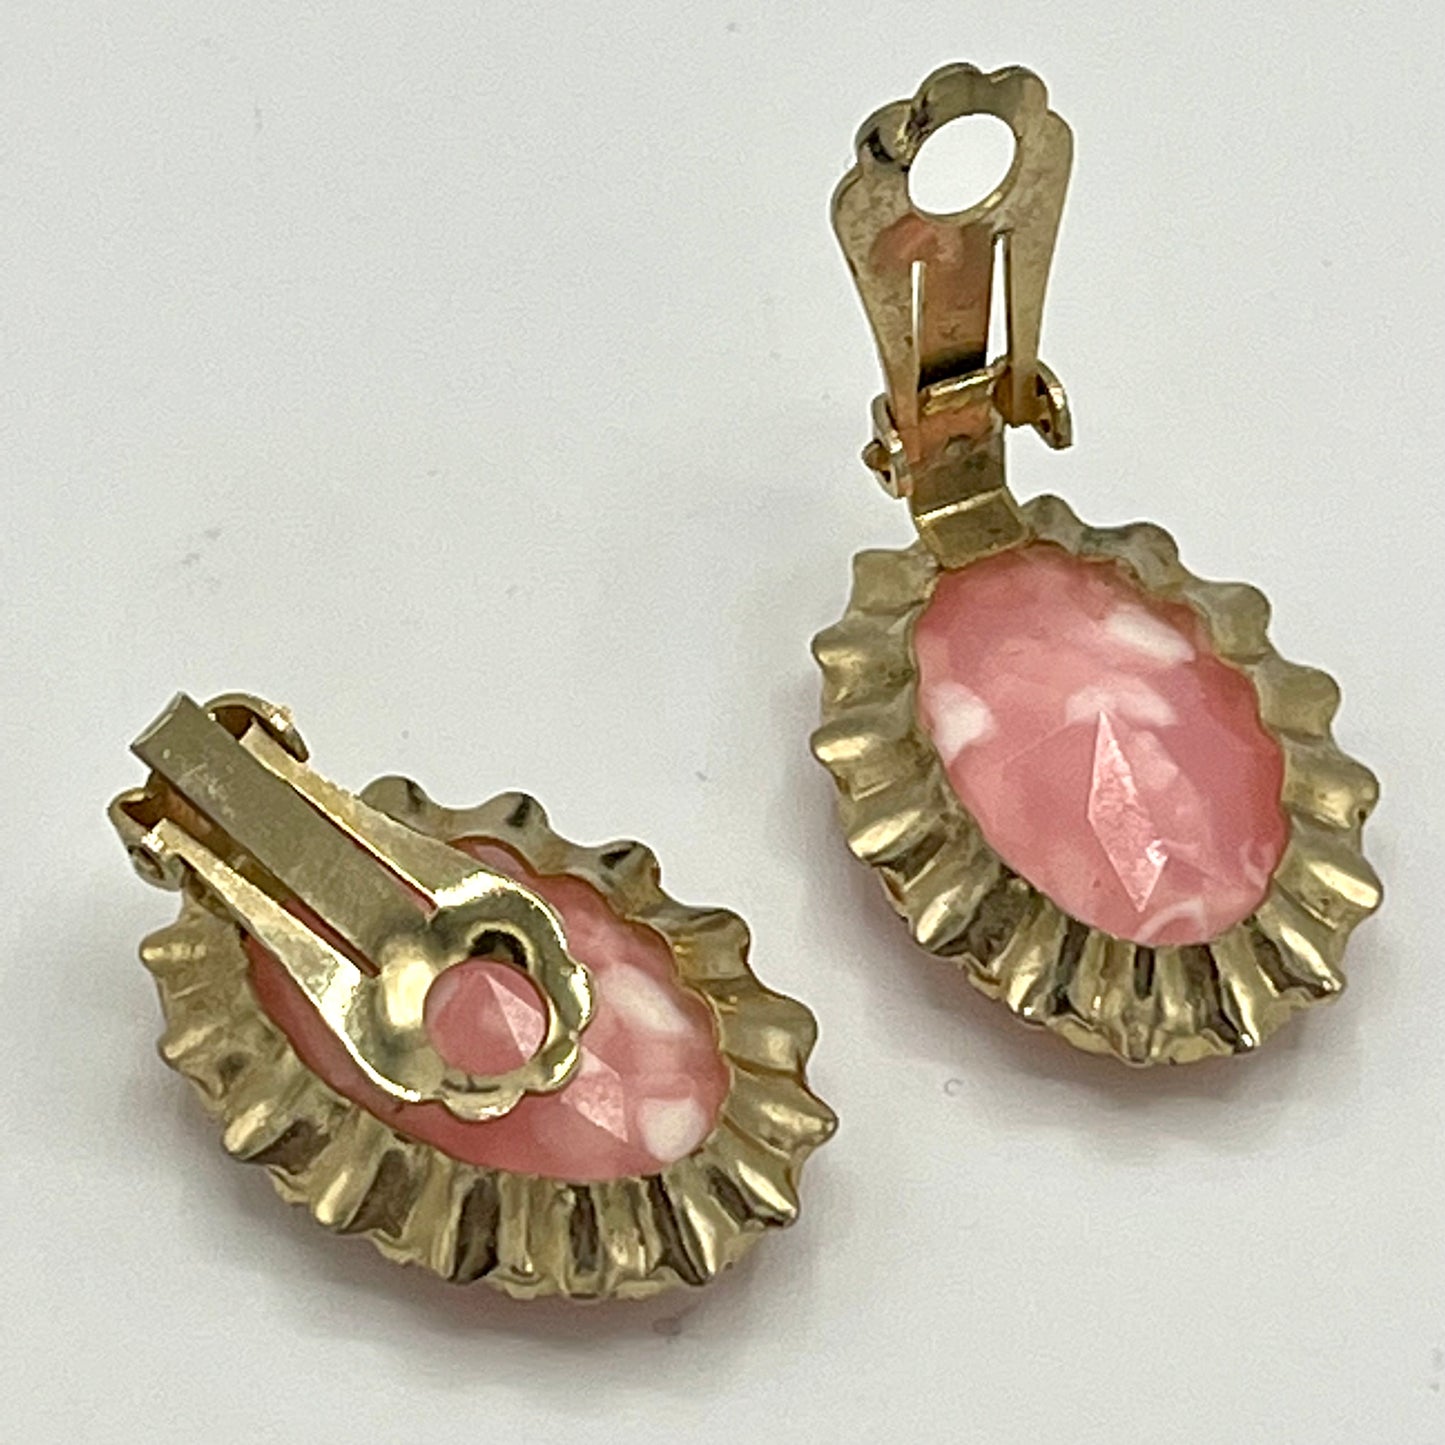 1960s Pink Glass Earrings